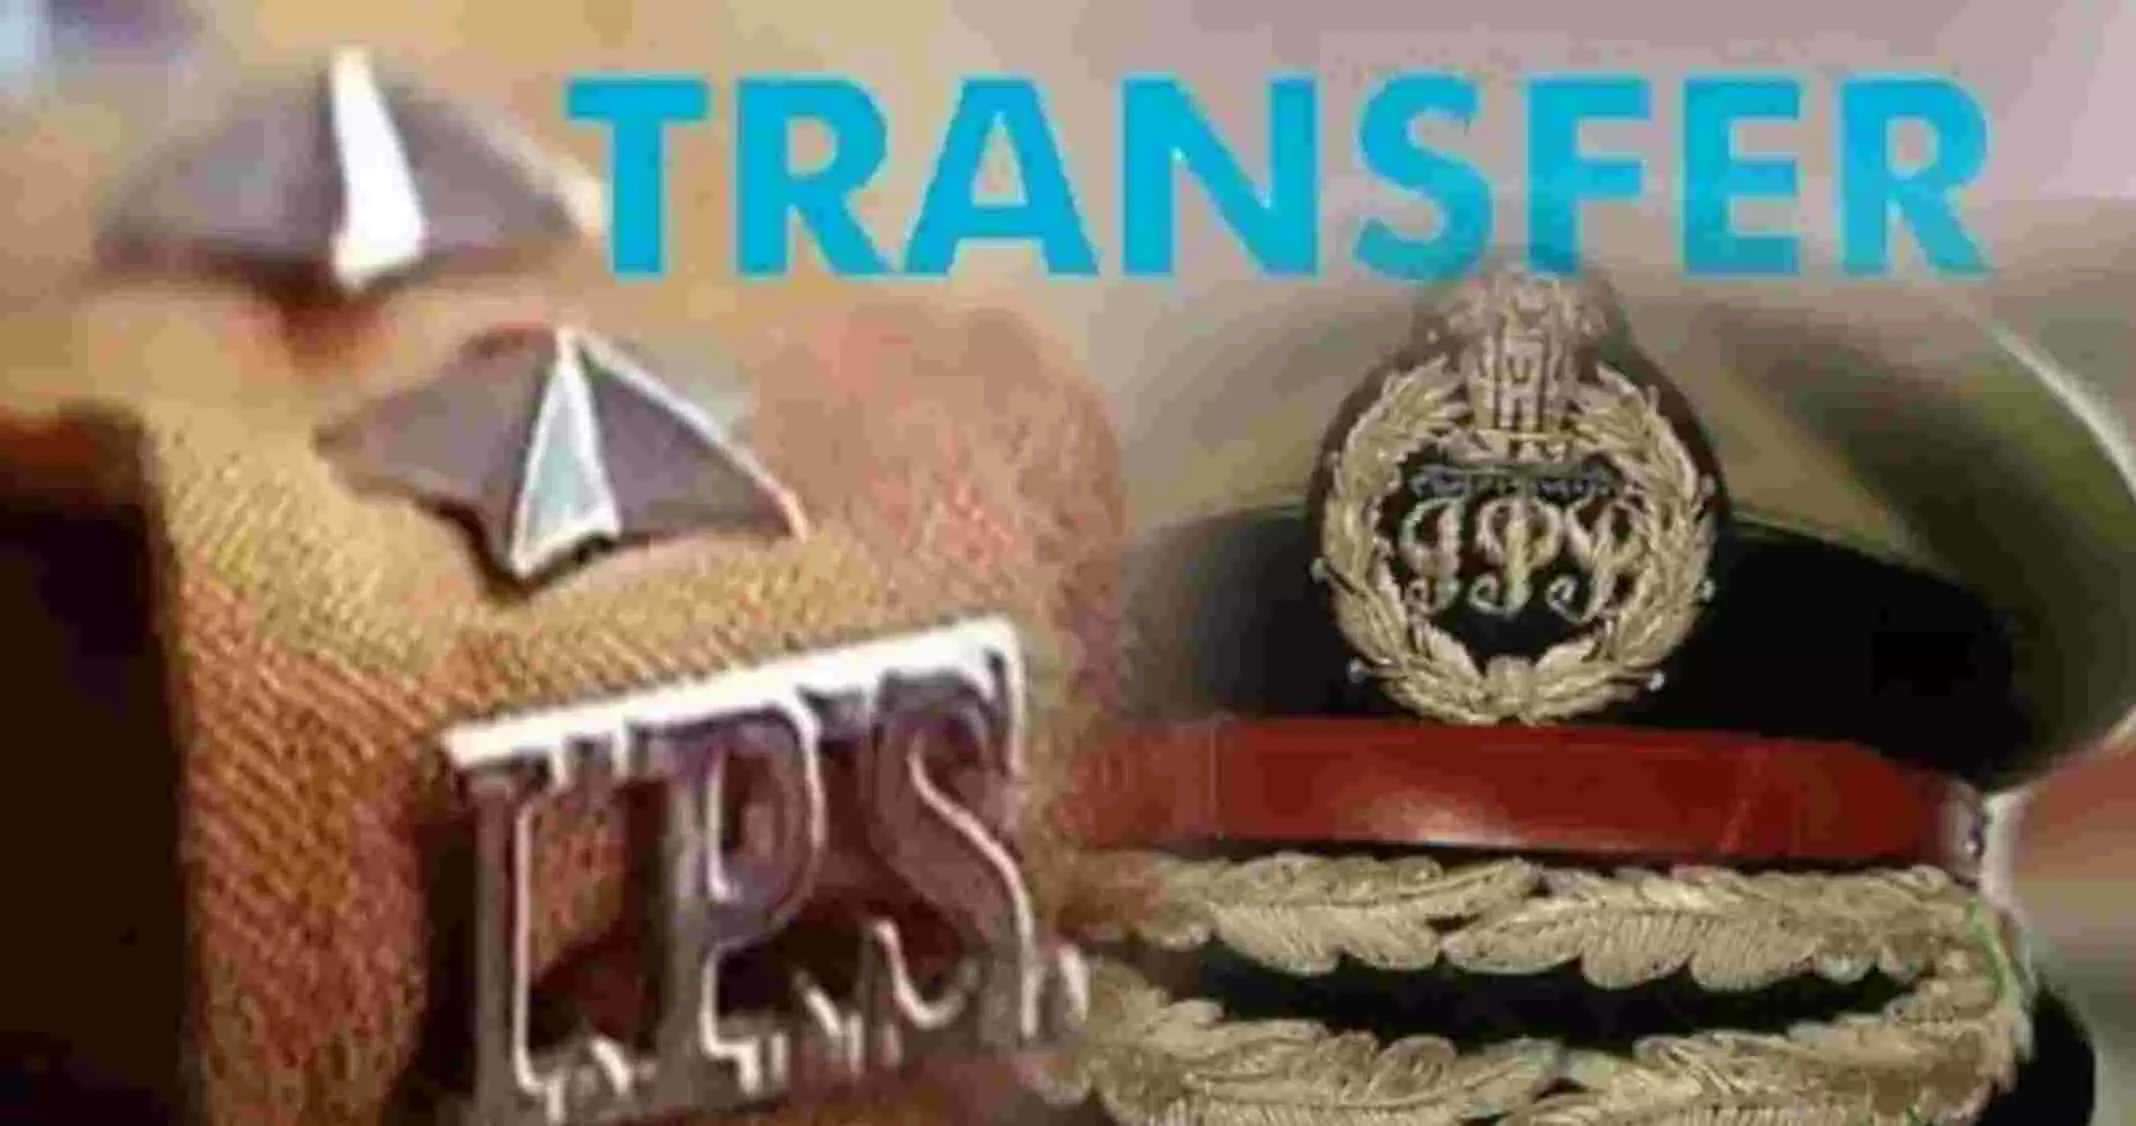 IPS Transfer: यूपी में 11 आईपीएस अधिकारियों का तबादला, 6 जिलों में कप्तान बदले, बृजेश सिंह बने एसपी लॉ एंड ऑर्डर